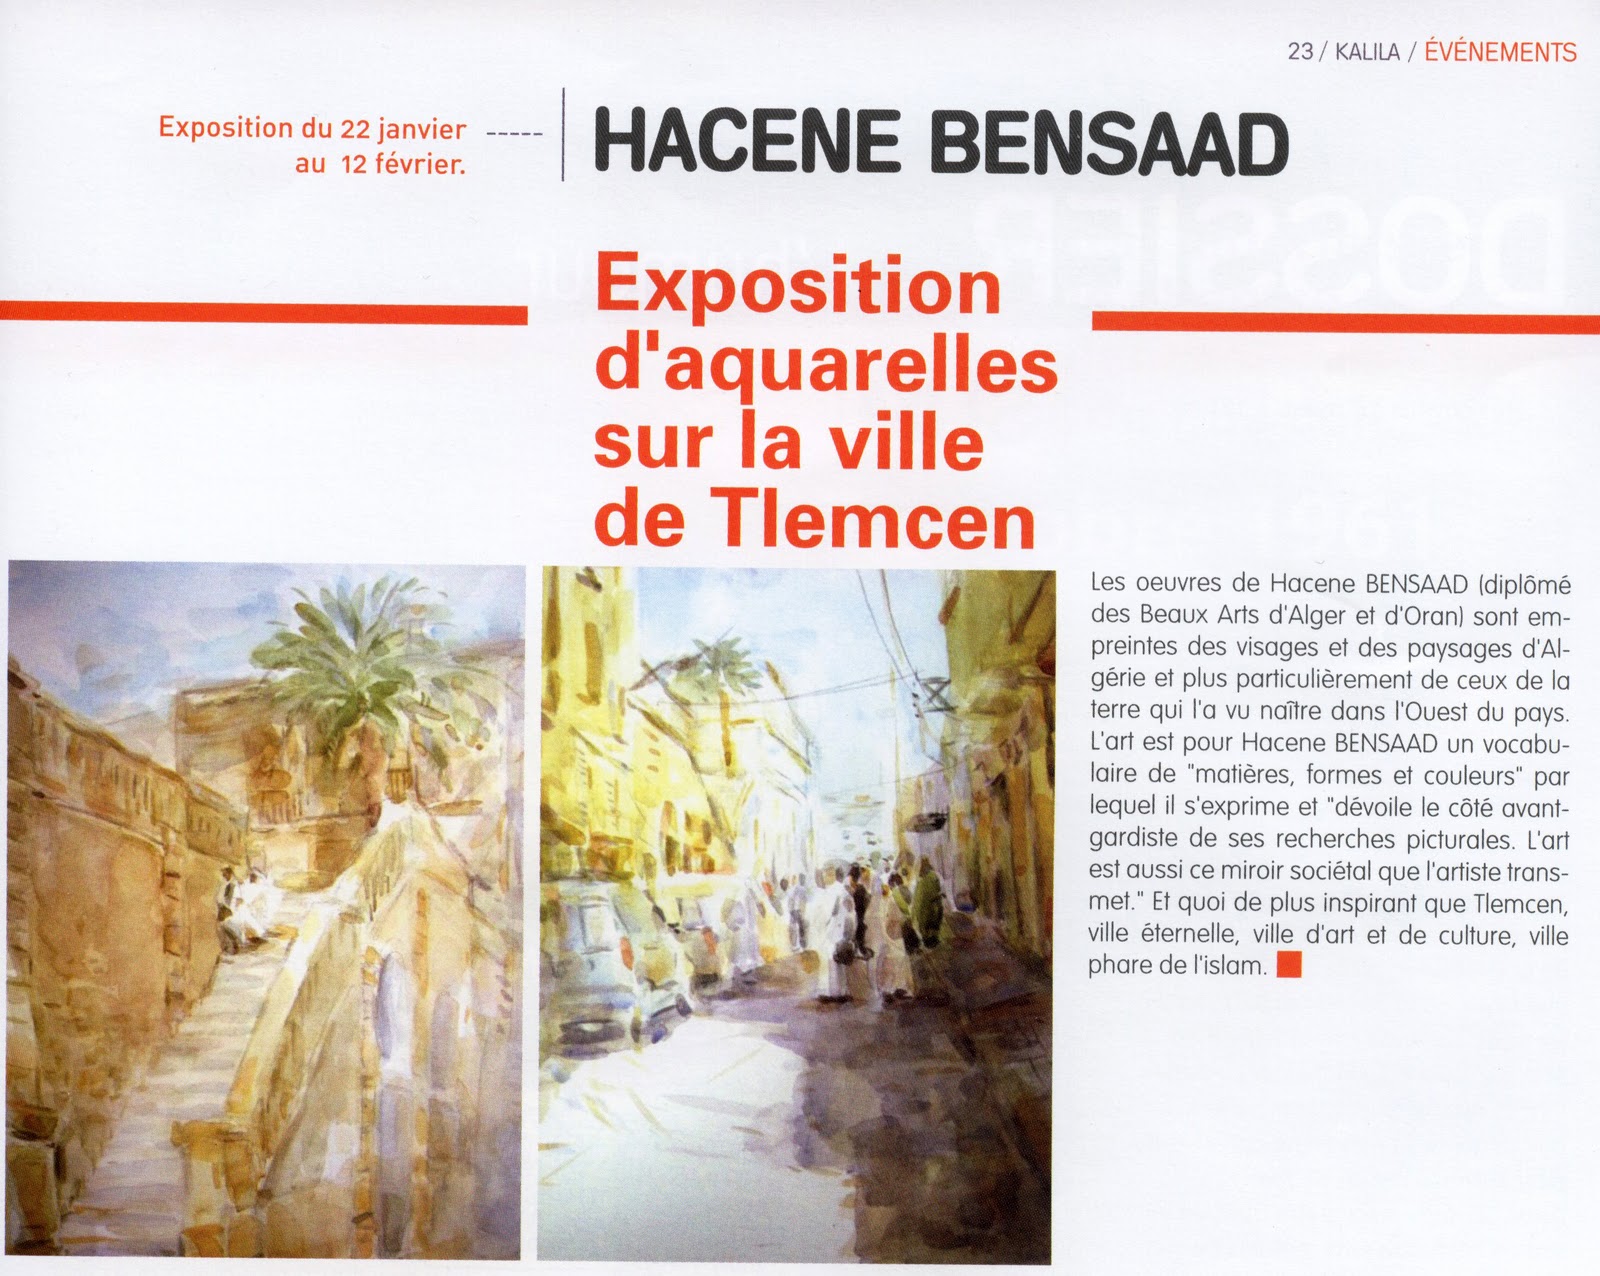 Exposition  d'aquarelles  sur la ville  de Tlemcen de Hacene Bensaad